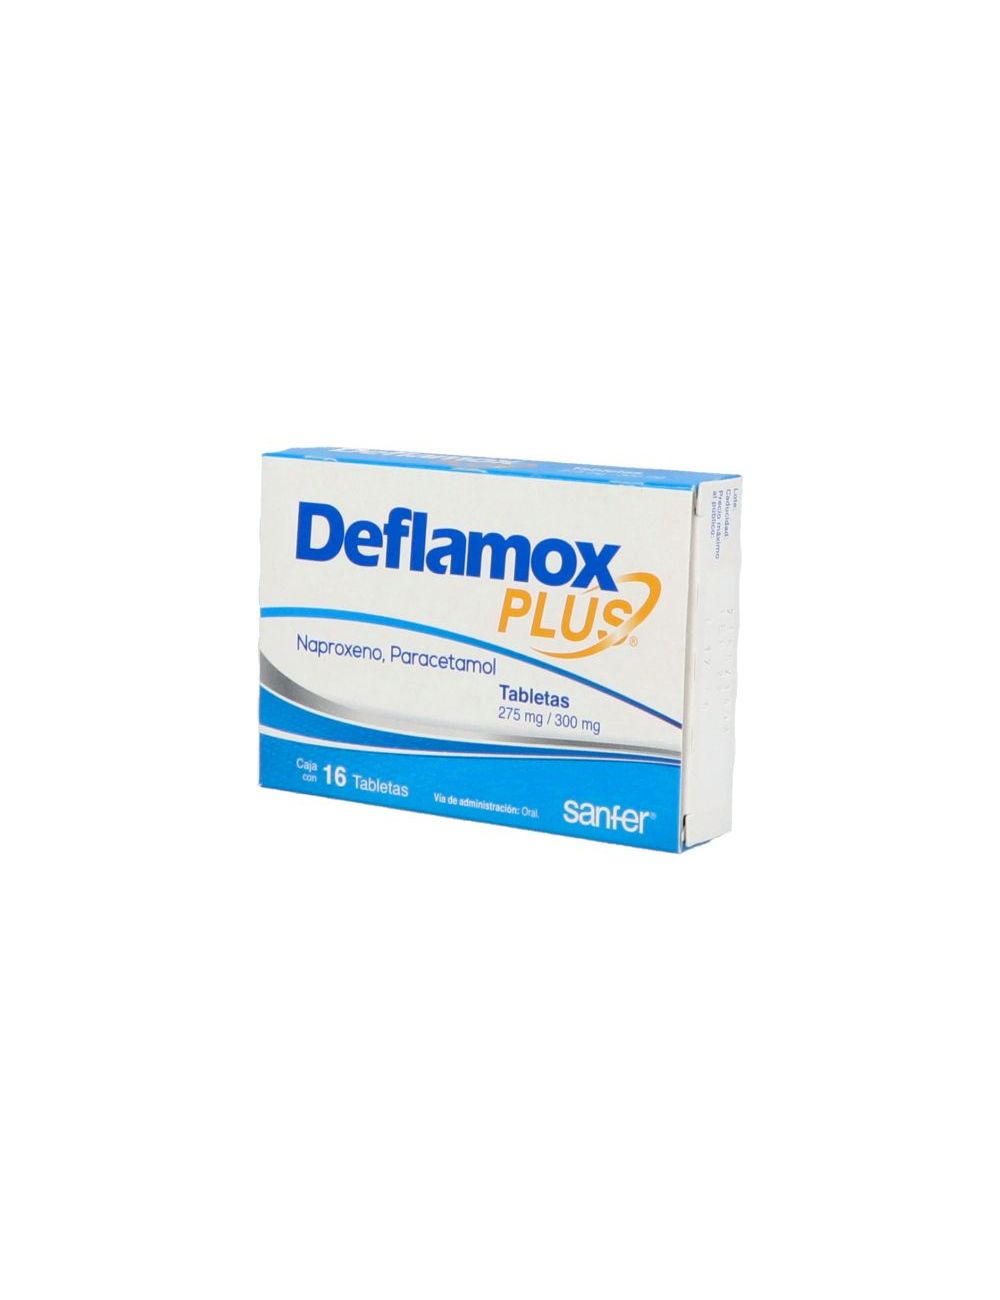 Deflamox Plus 275 mg/300 mg 16 Tabletas